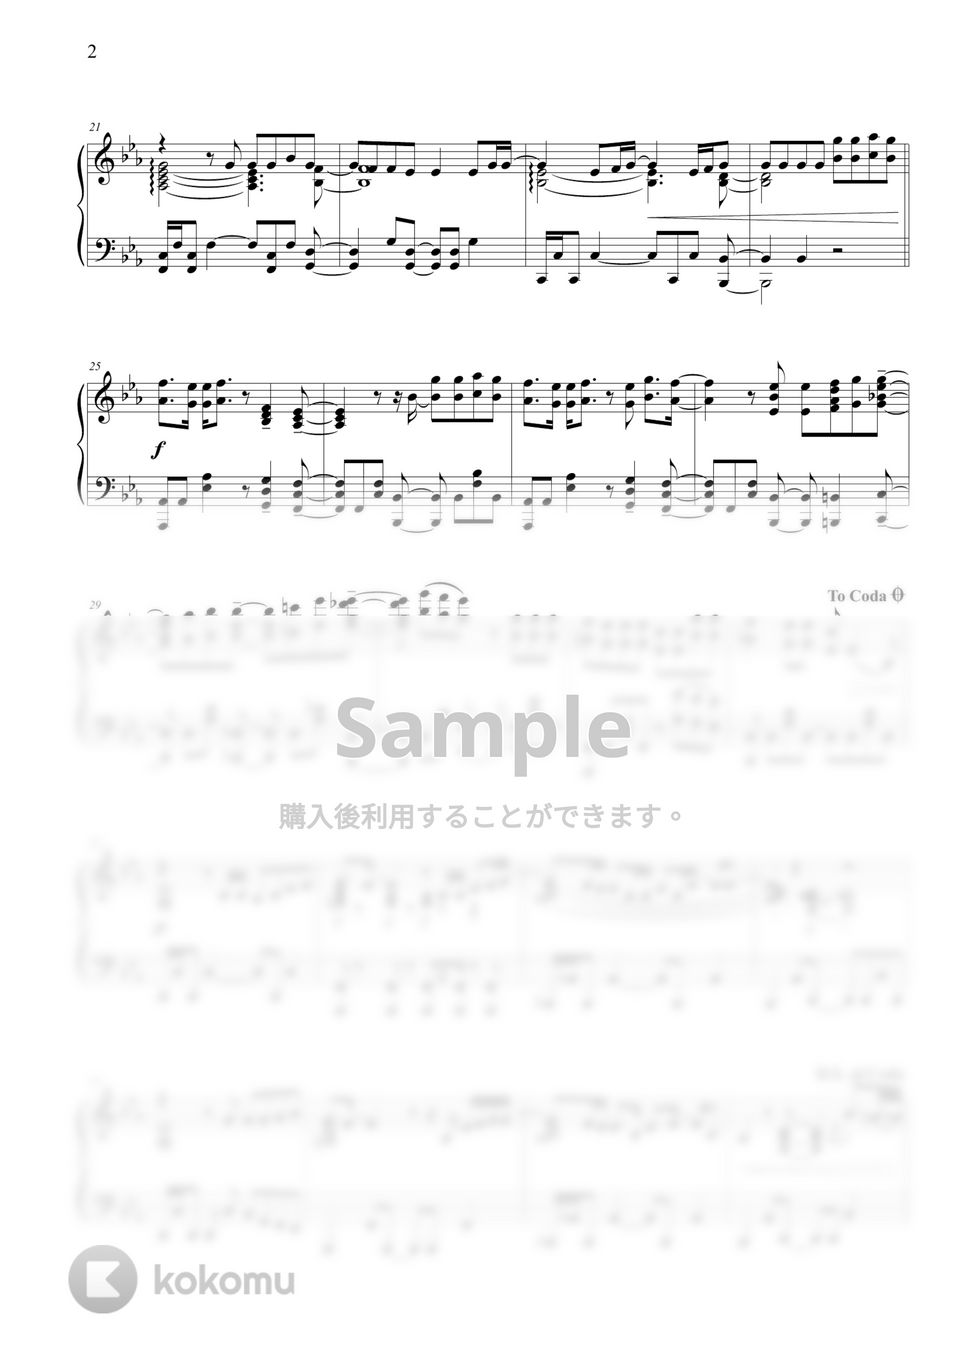 ホンネ - Good Together by THIS IS PIANO